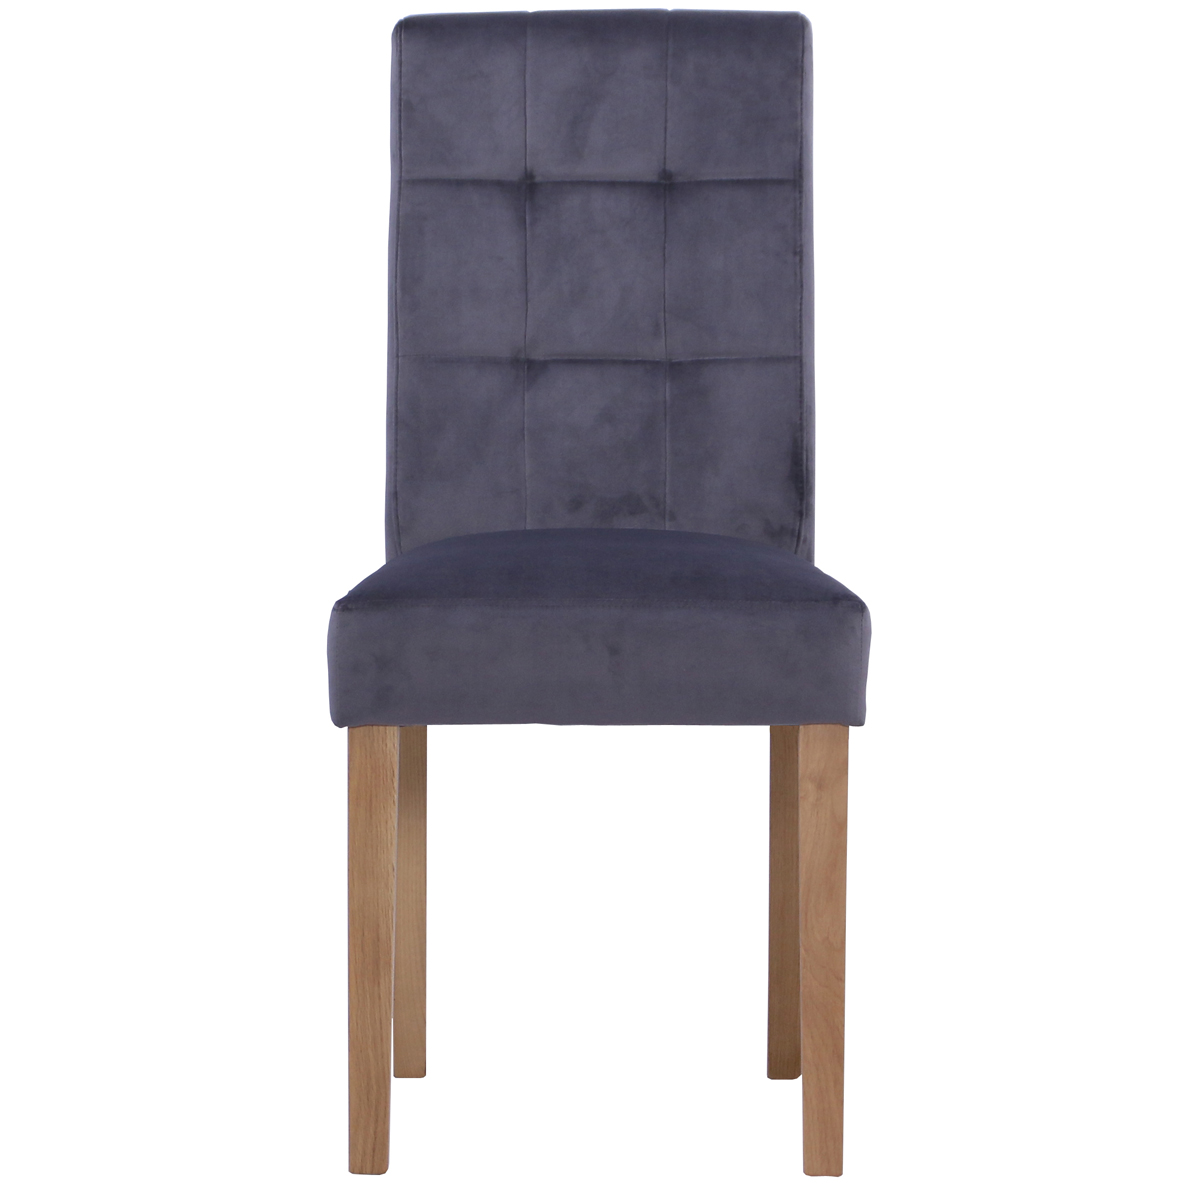 New Oak Ash 101 Chair